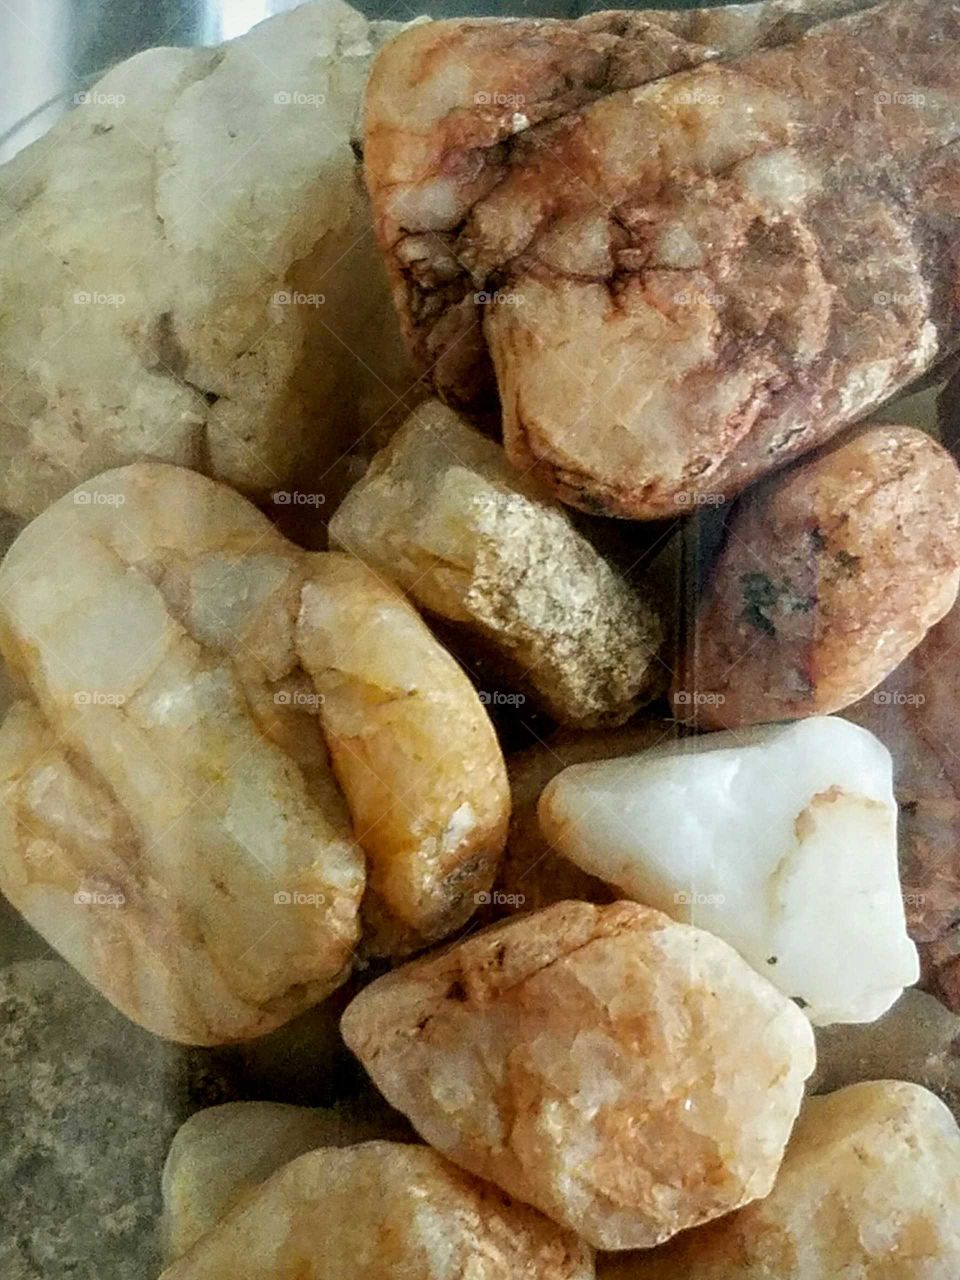 Unique stones